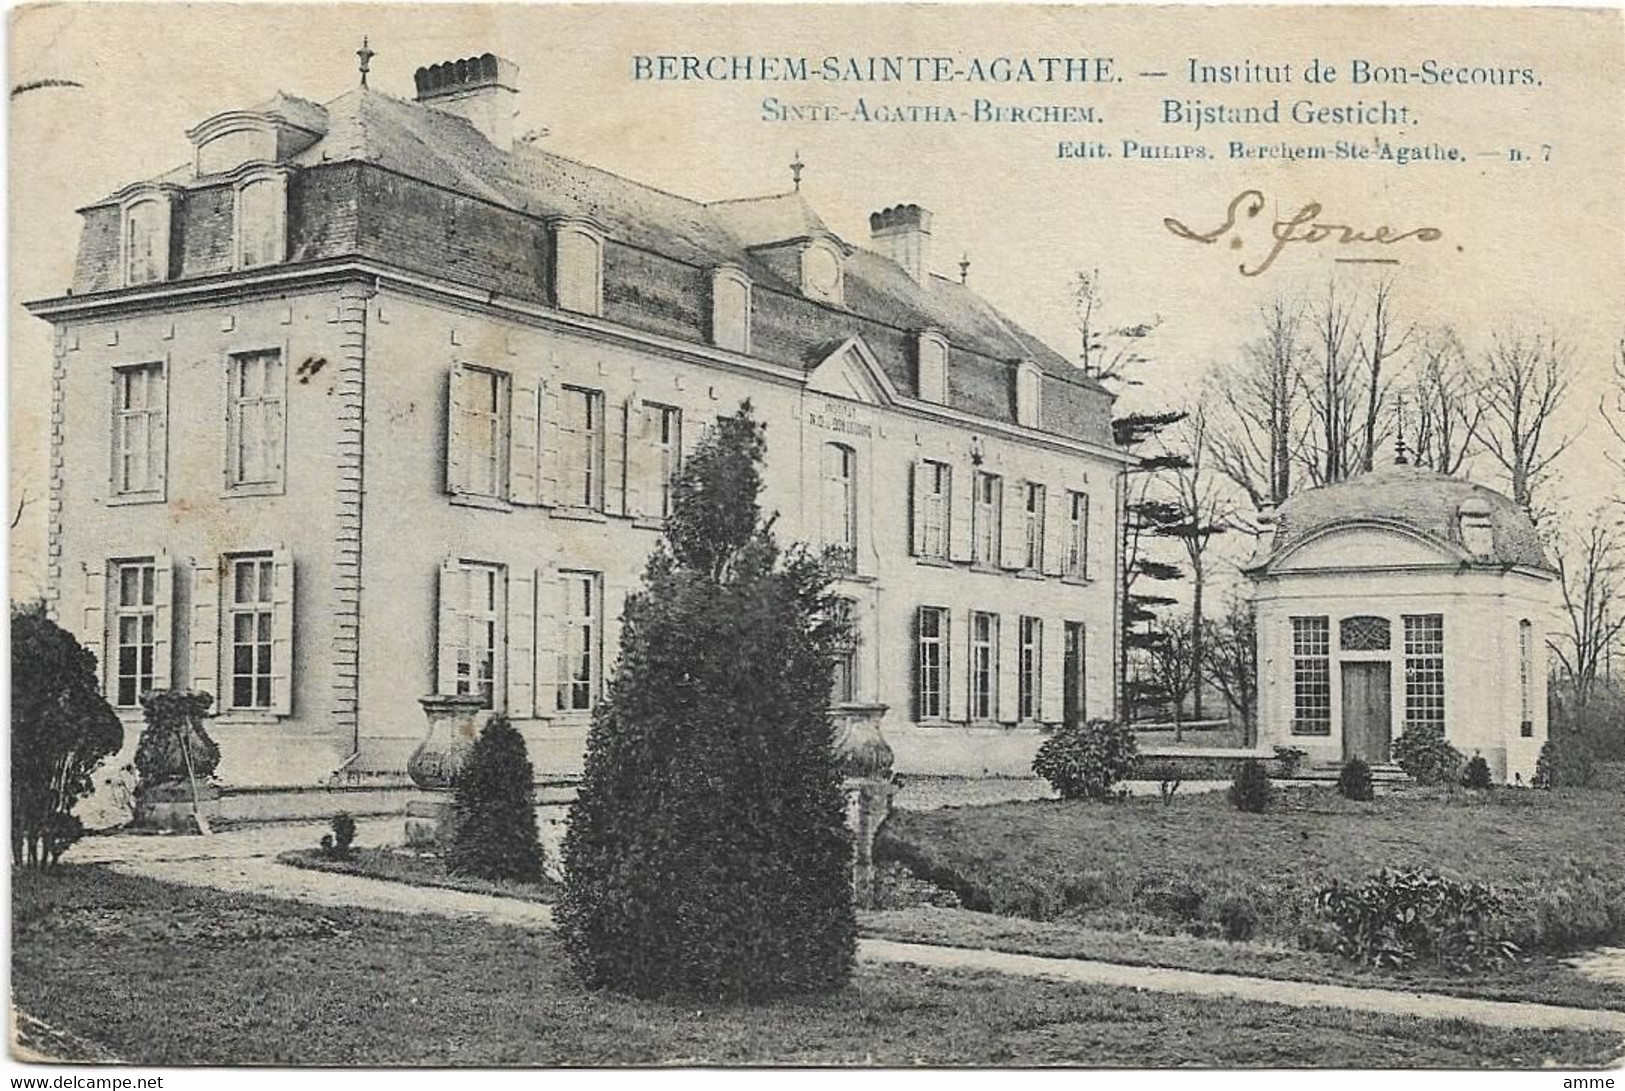 Sint-Agatha-Berchem   *   Institut De Bon-Secours - Bijstand Gesticht - St-Agatha-Berchem - Berchem-Ste-Agathe